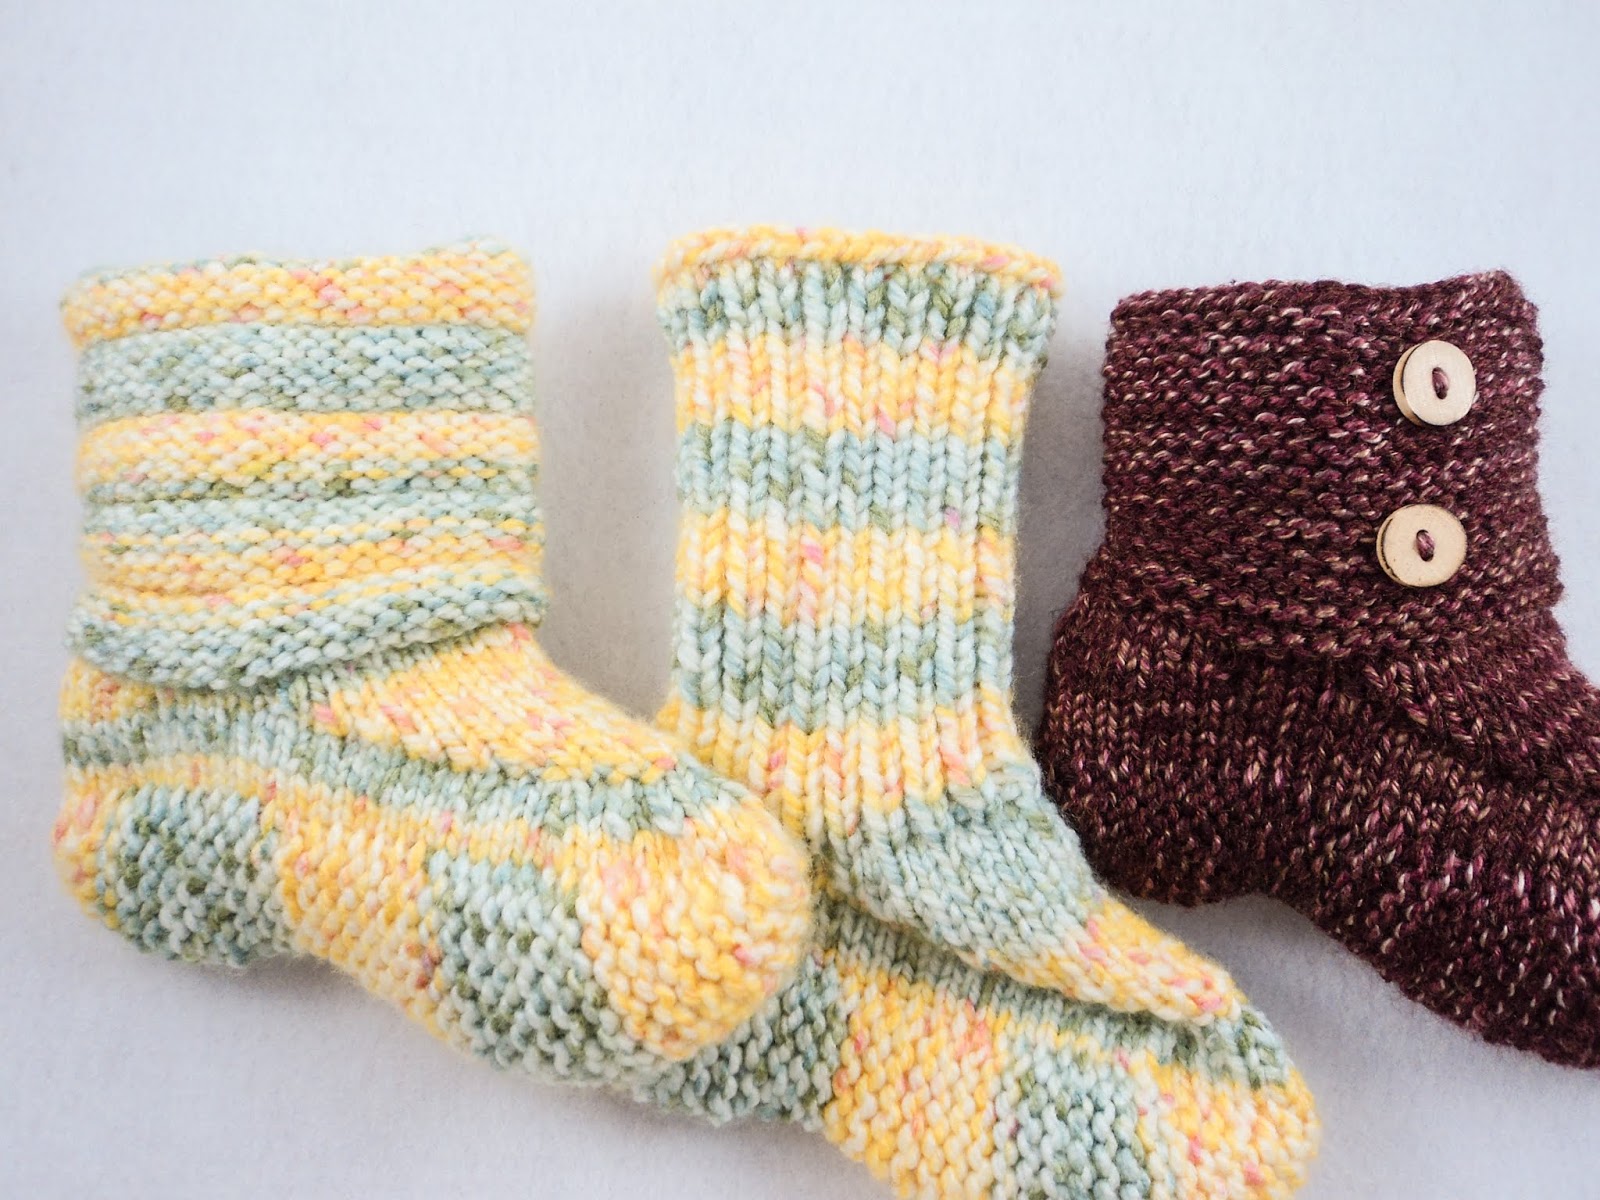 moniqueraedesigns: New! Her Slipper Sock Knitting Pattern!